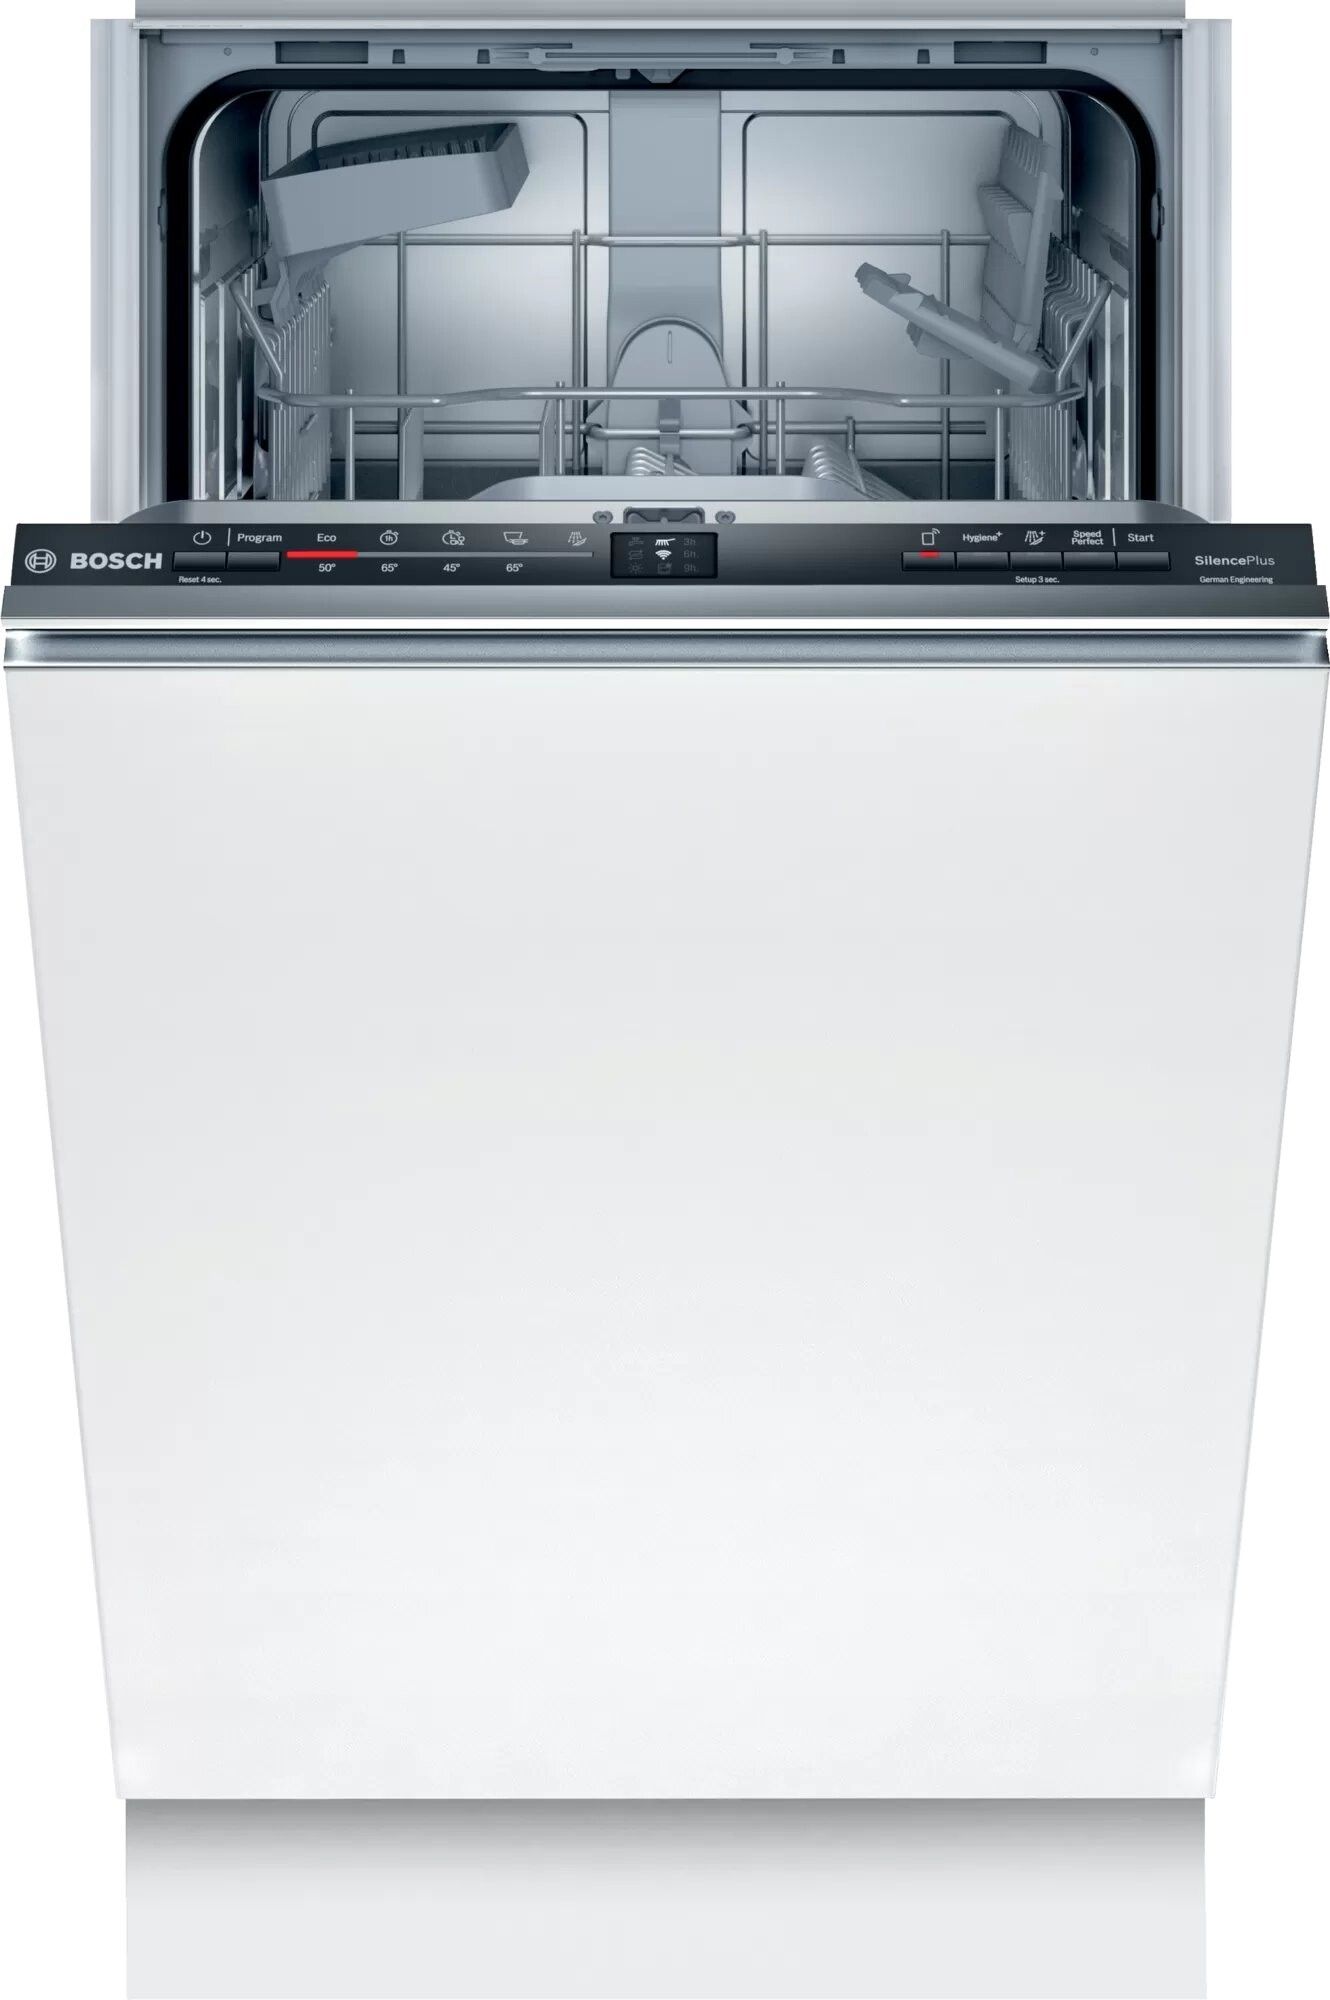 Посудомоечная машина Electrolux ESL 94585 ro. Bosch spv66mx10r. Посудомоечная машина Bosch spv2imy2er. Bosch serie 2 посудомоечная машина 60 см.